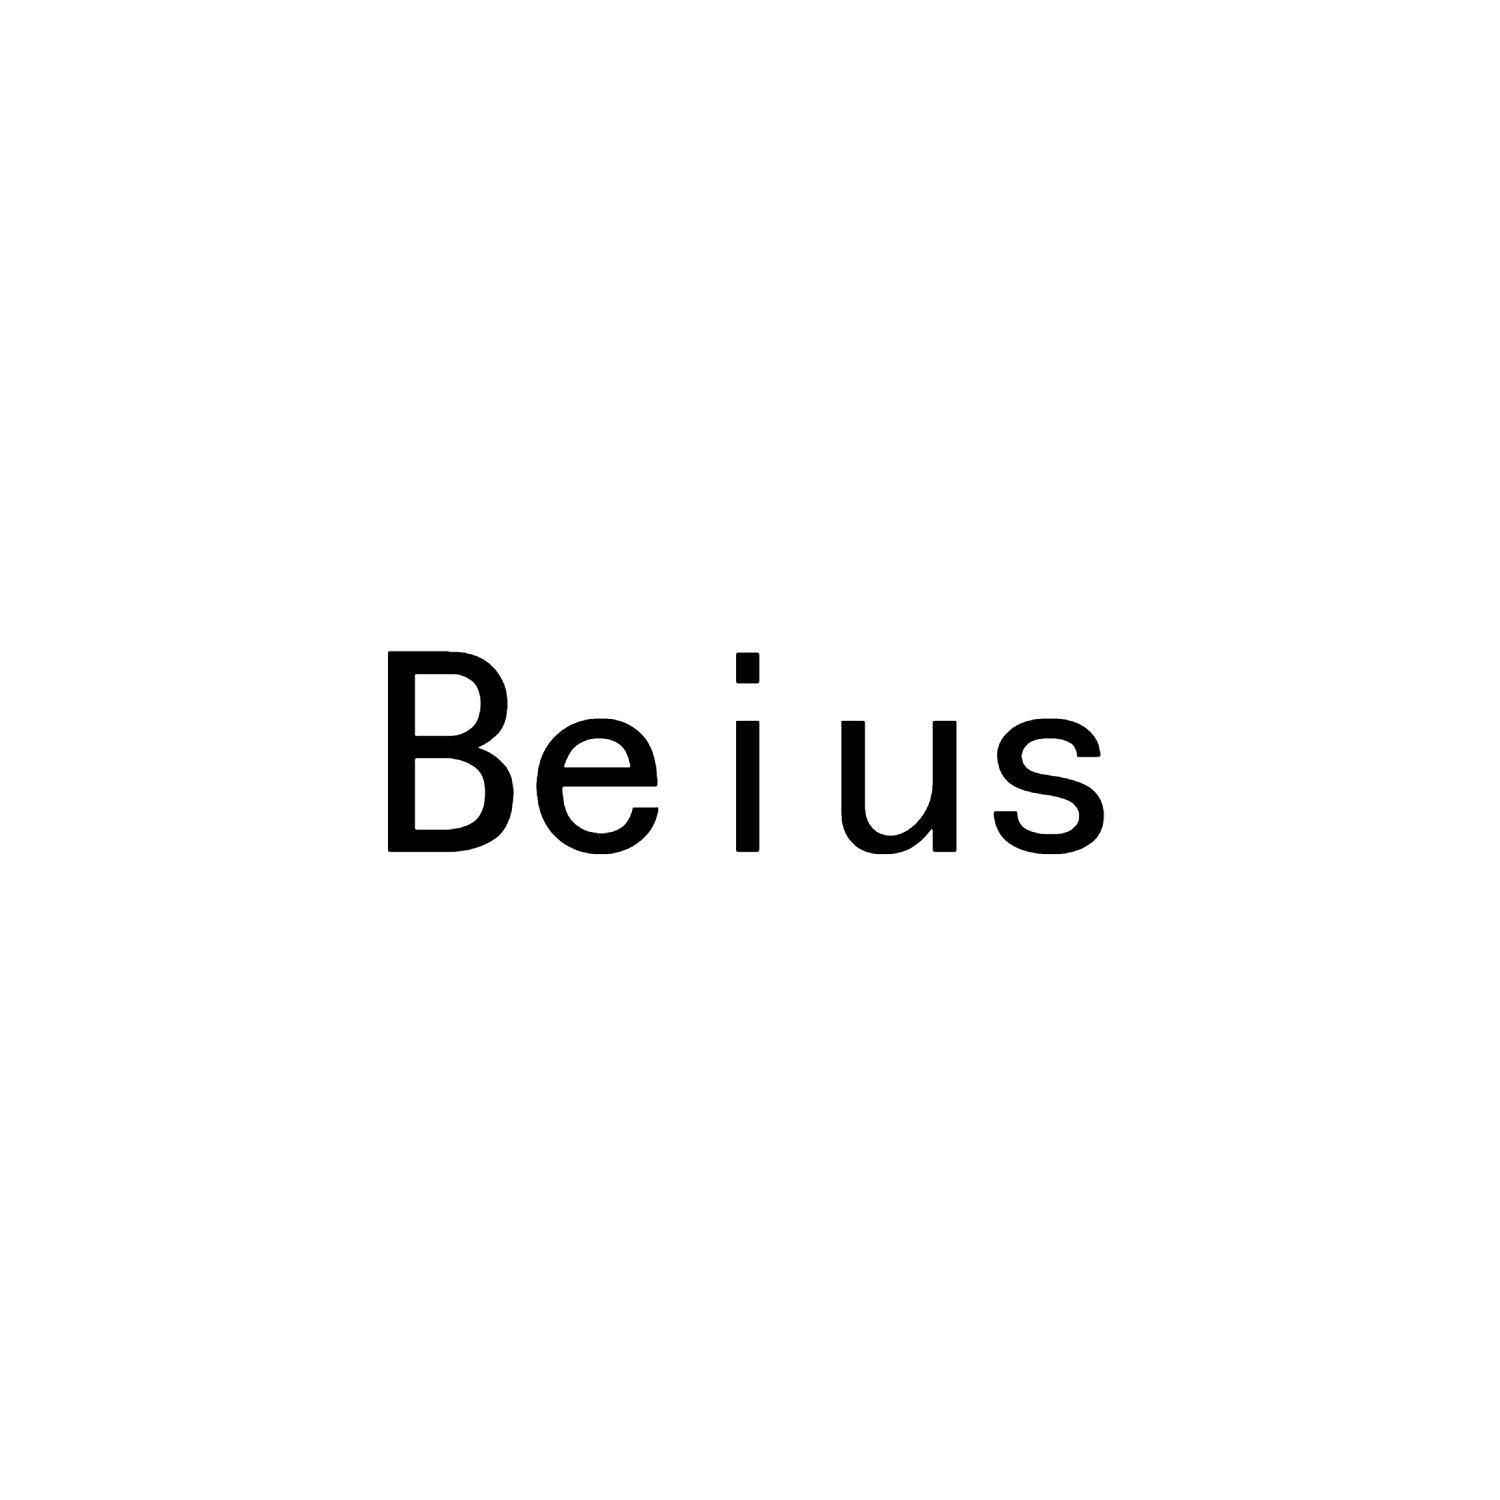 BEIUS